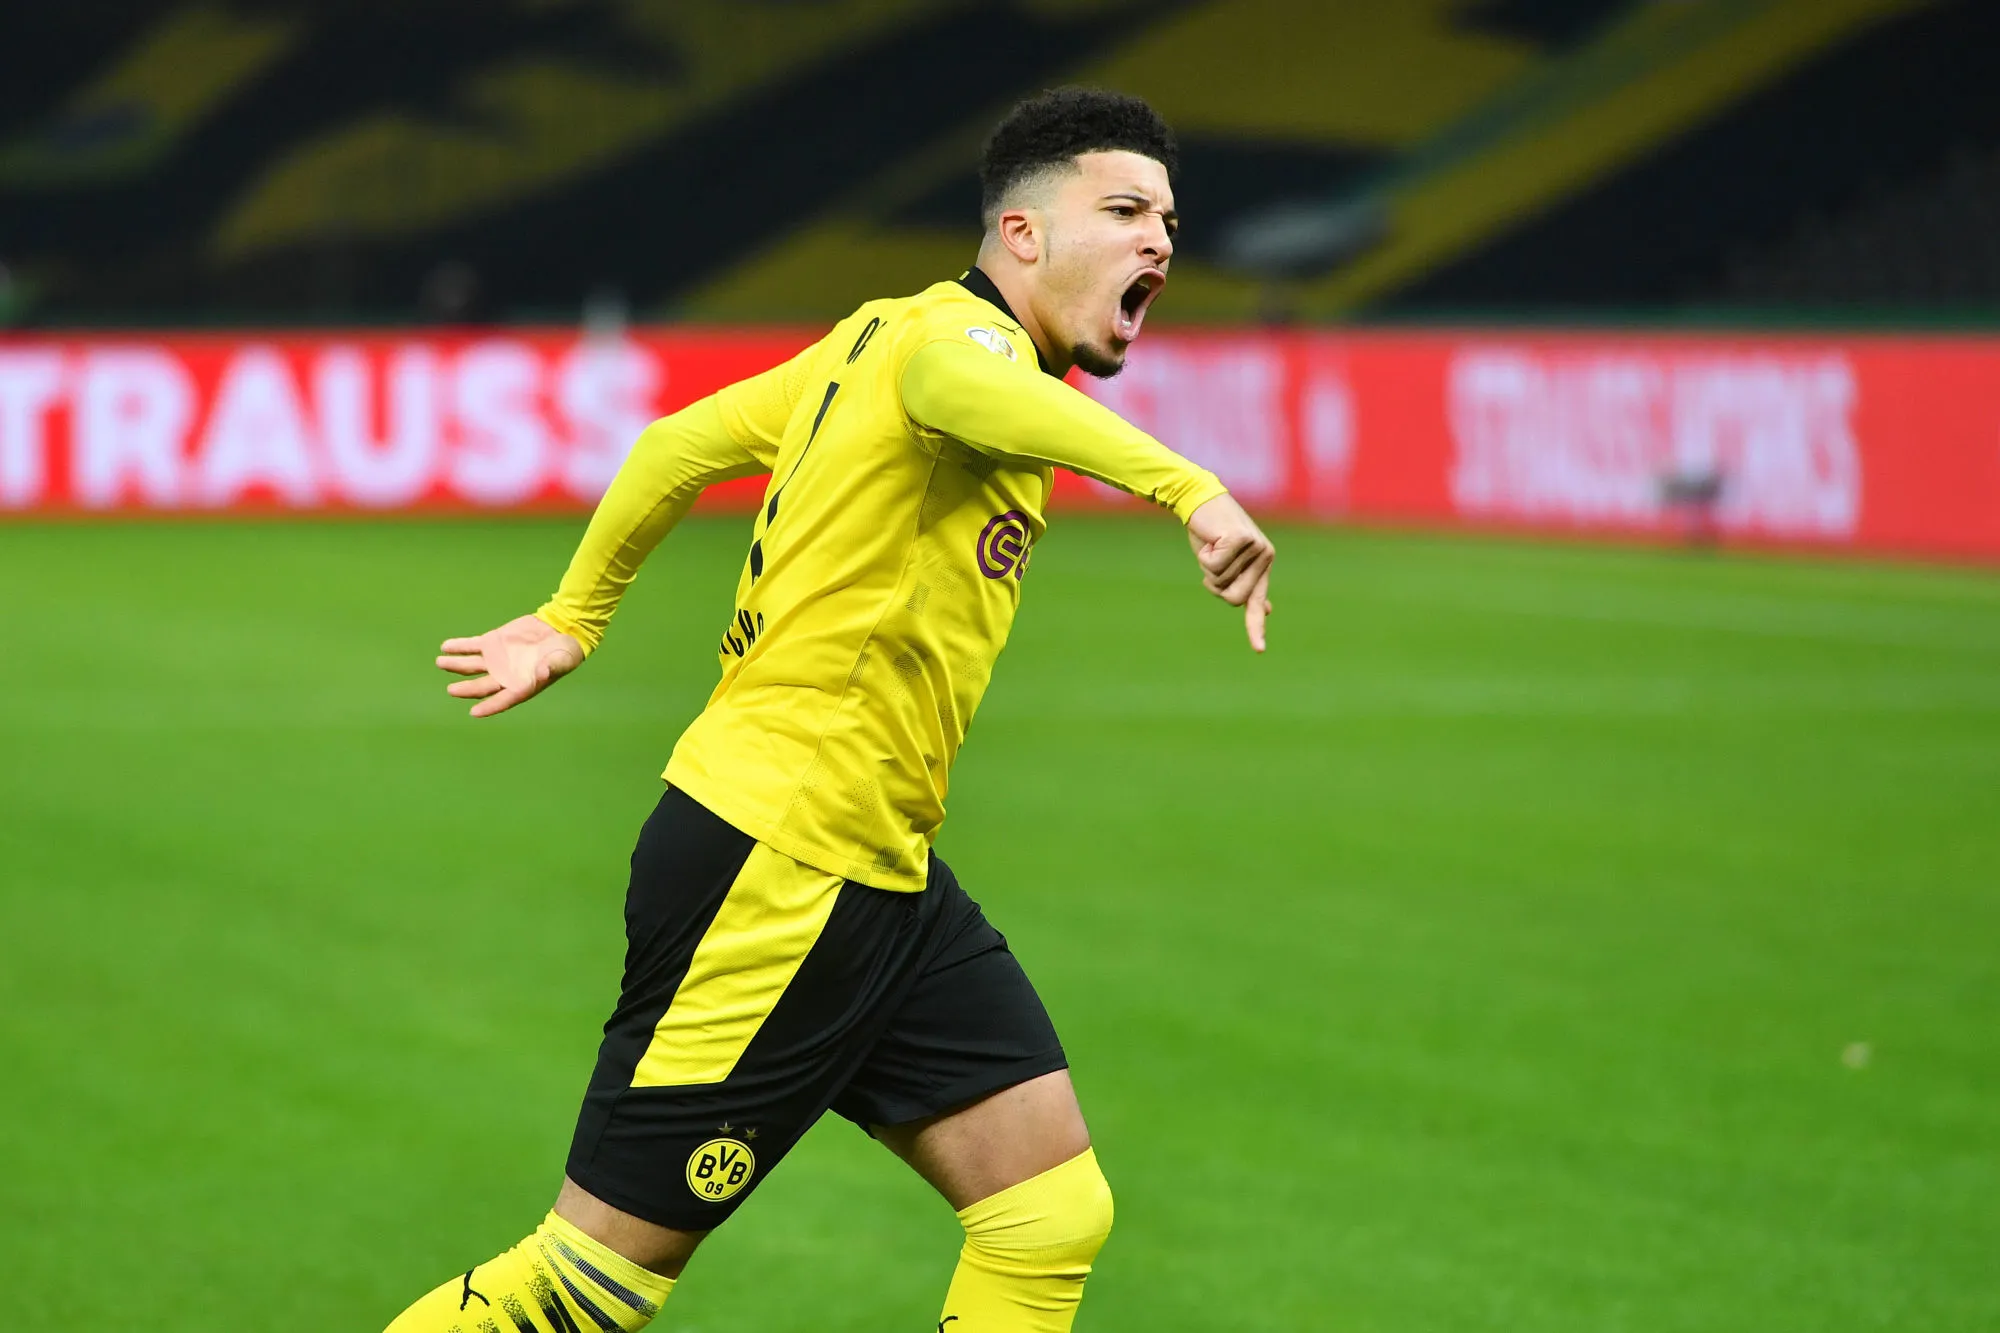 Accord de principe entre Manchester United et le Borussia Dortmund pour Jadon Sancho